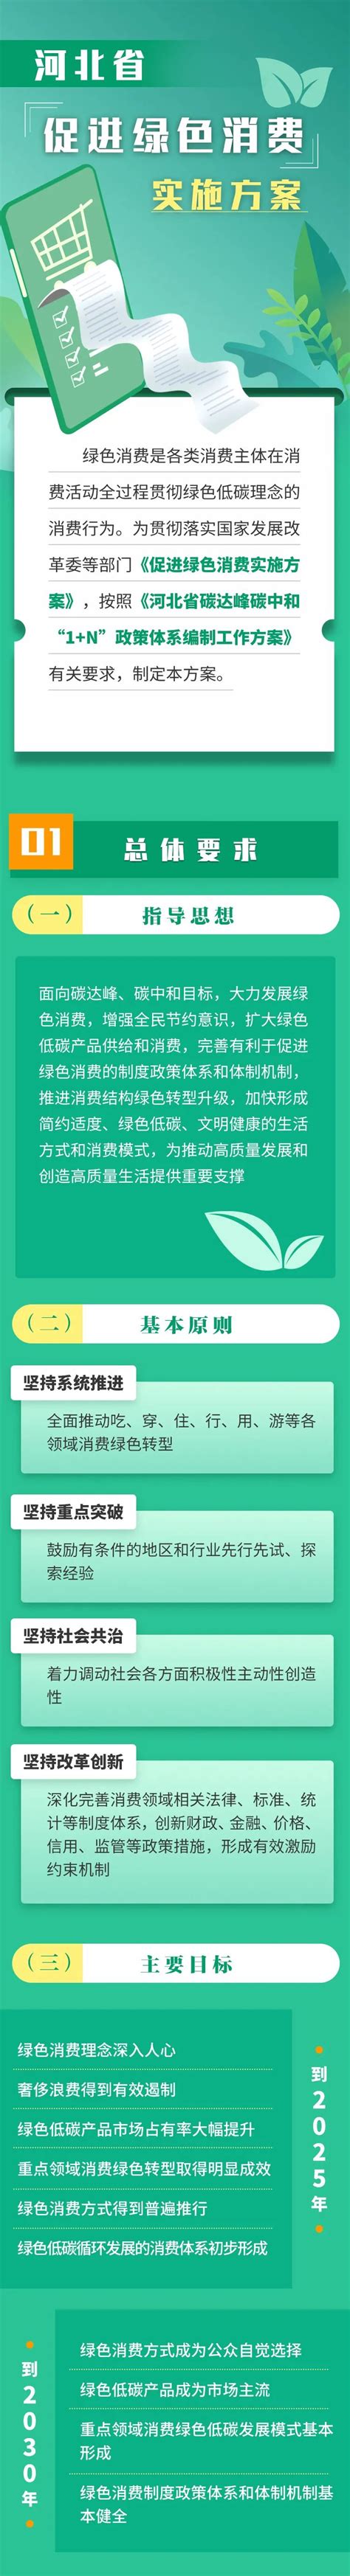 【图解】河北省一季度社会消费品零售总额增长8.4%__凤凰网